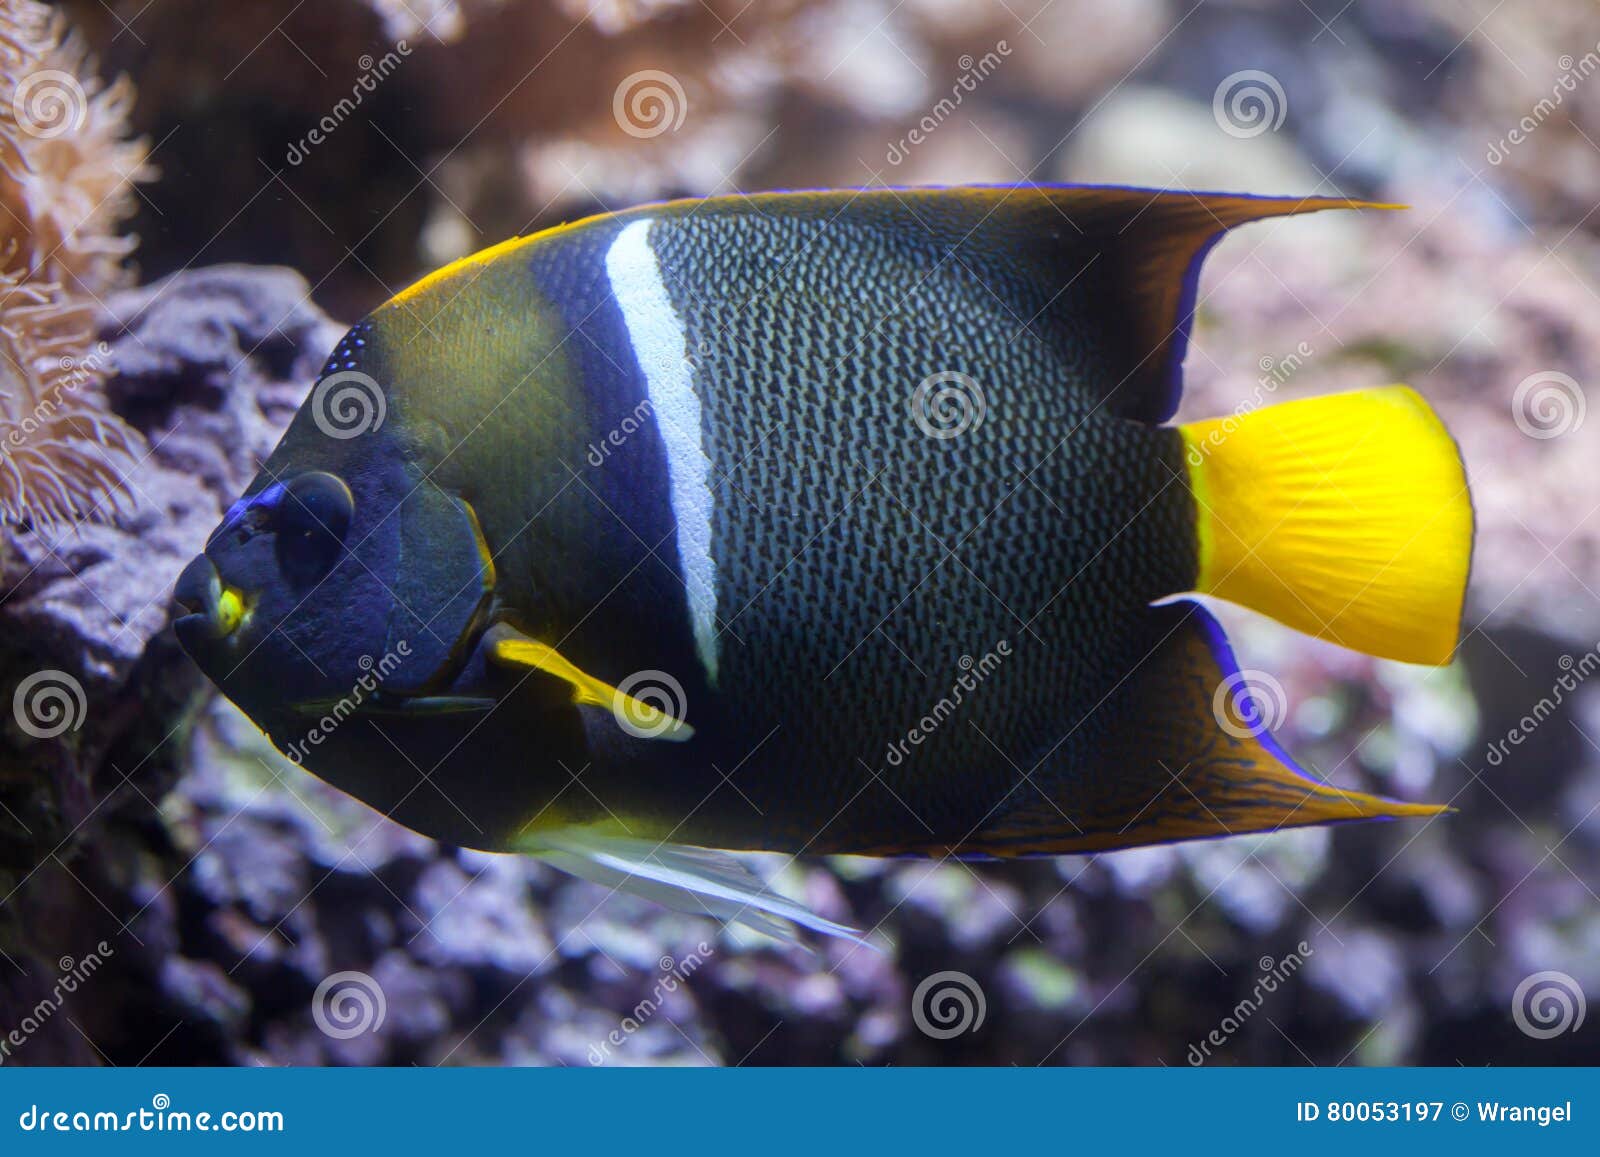 king angelfish (holacanthus passer).